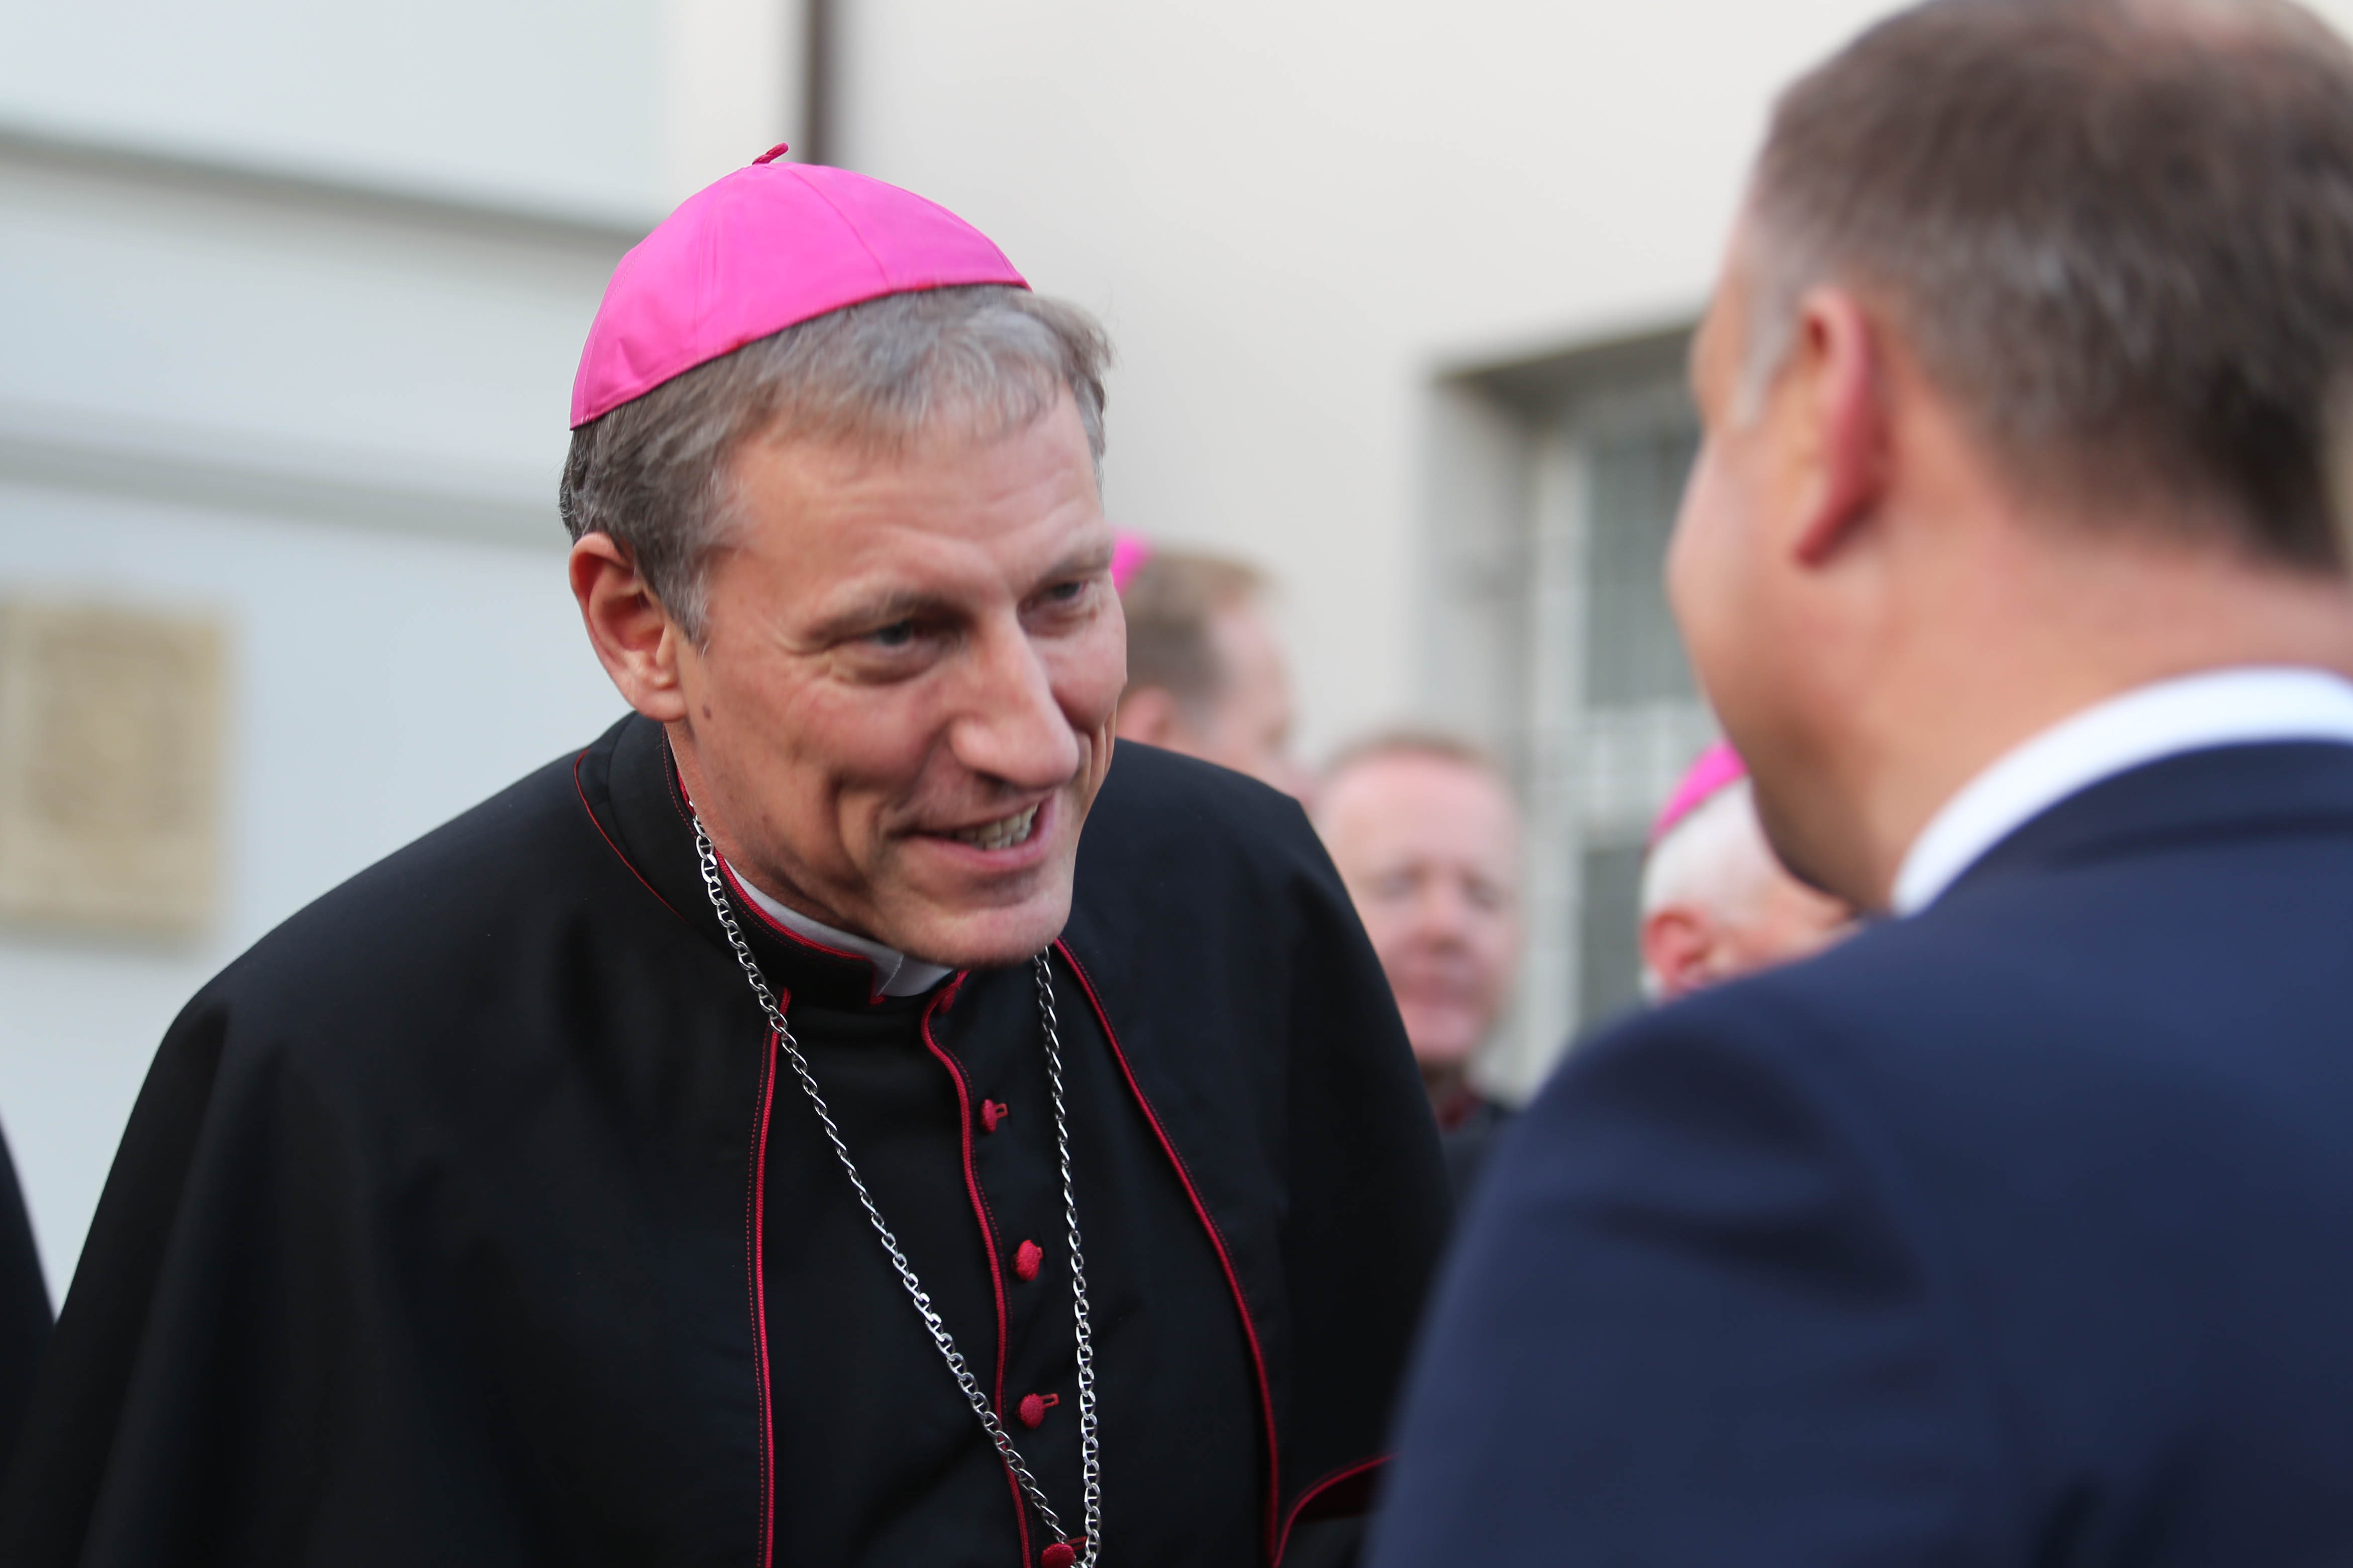 Arzobispo de Riga, Mons. Zbignevs Stankevics